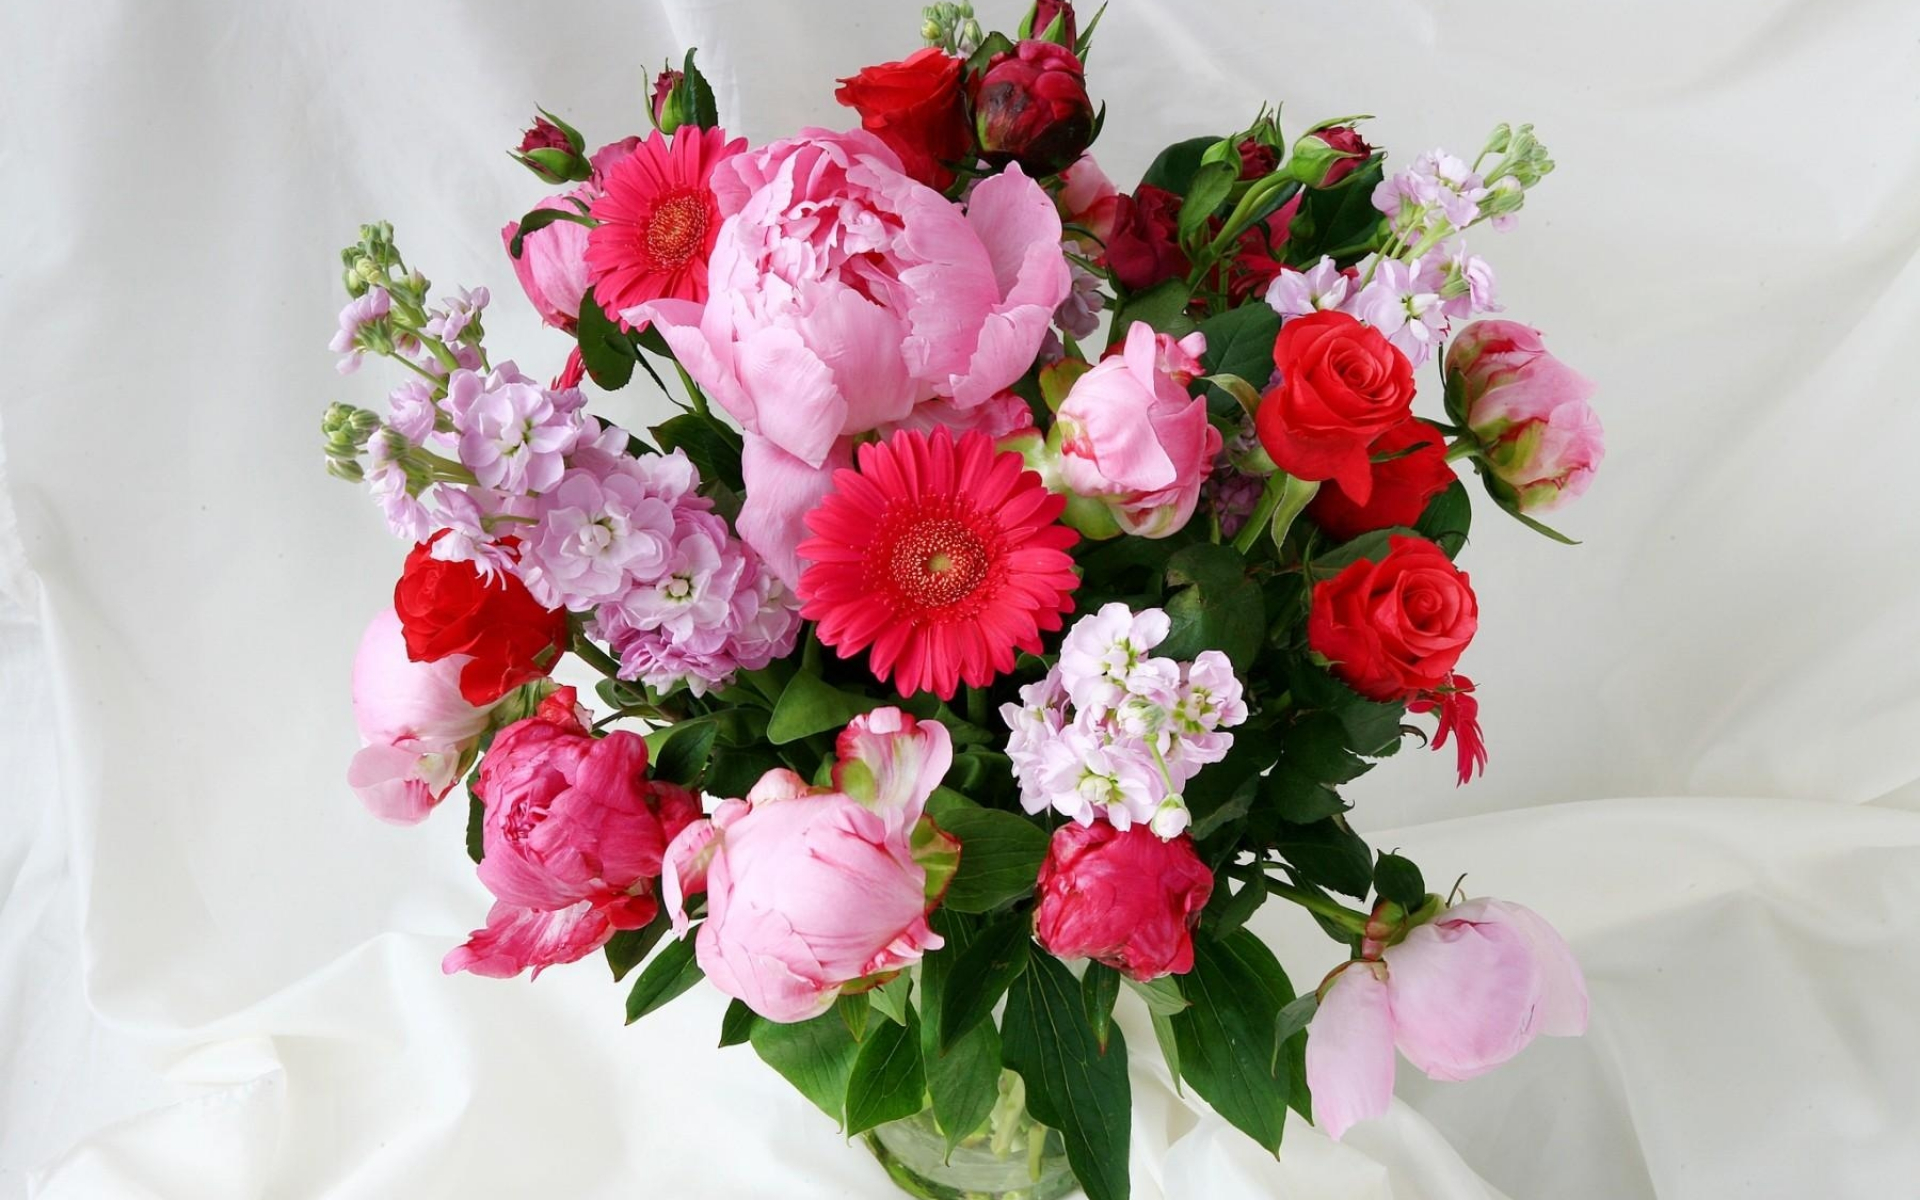 Фото букета на телефон. Букет с пионами. Букет шикарный. Шикарные цветы. Красивый букет цветов с днем рождения.